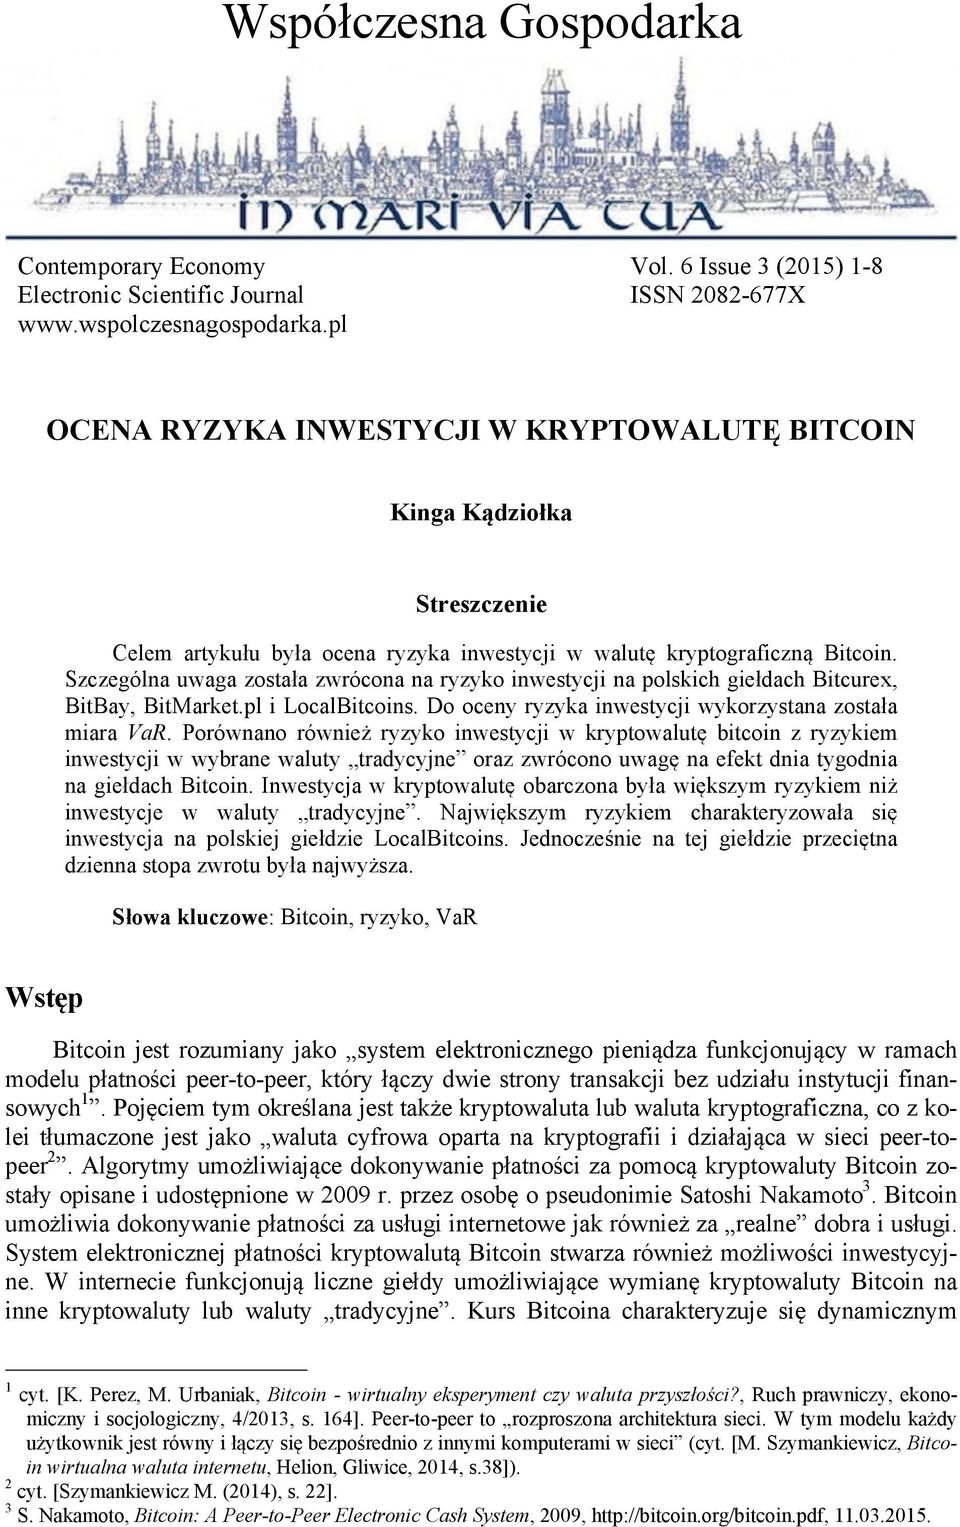 Szczególna uwaga została zwrócona na ryzyko inwestycji na polskich giełdach Bitcurex, BitBay, BitMarket.pl i LocalBitcoins. Do oceny ryzyka inwestycji wykorzystana została miara VaR.